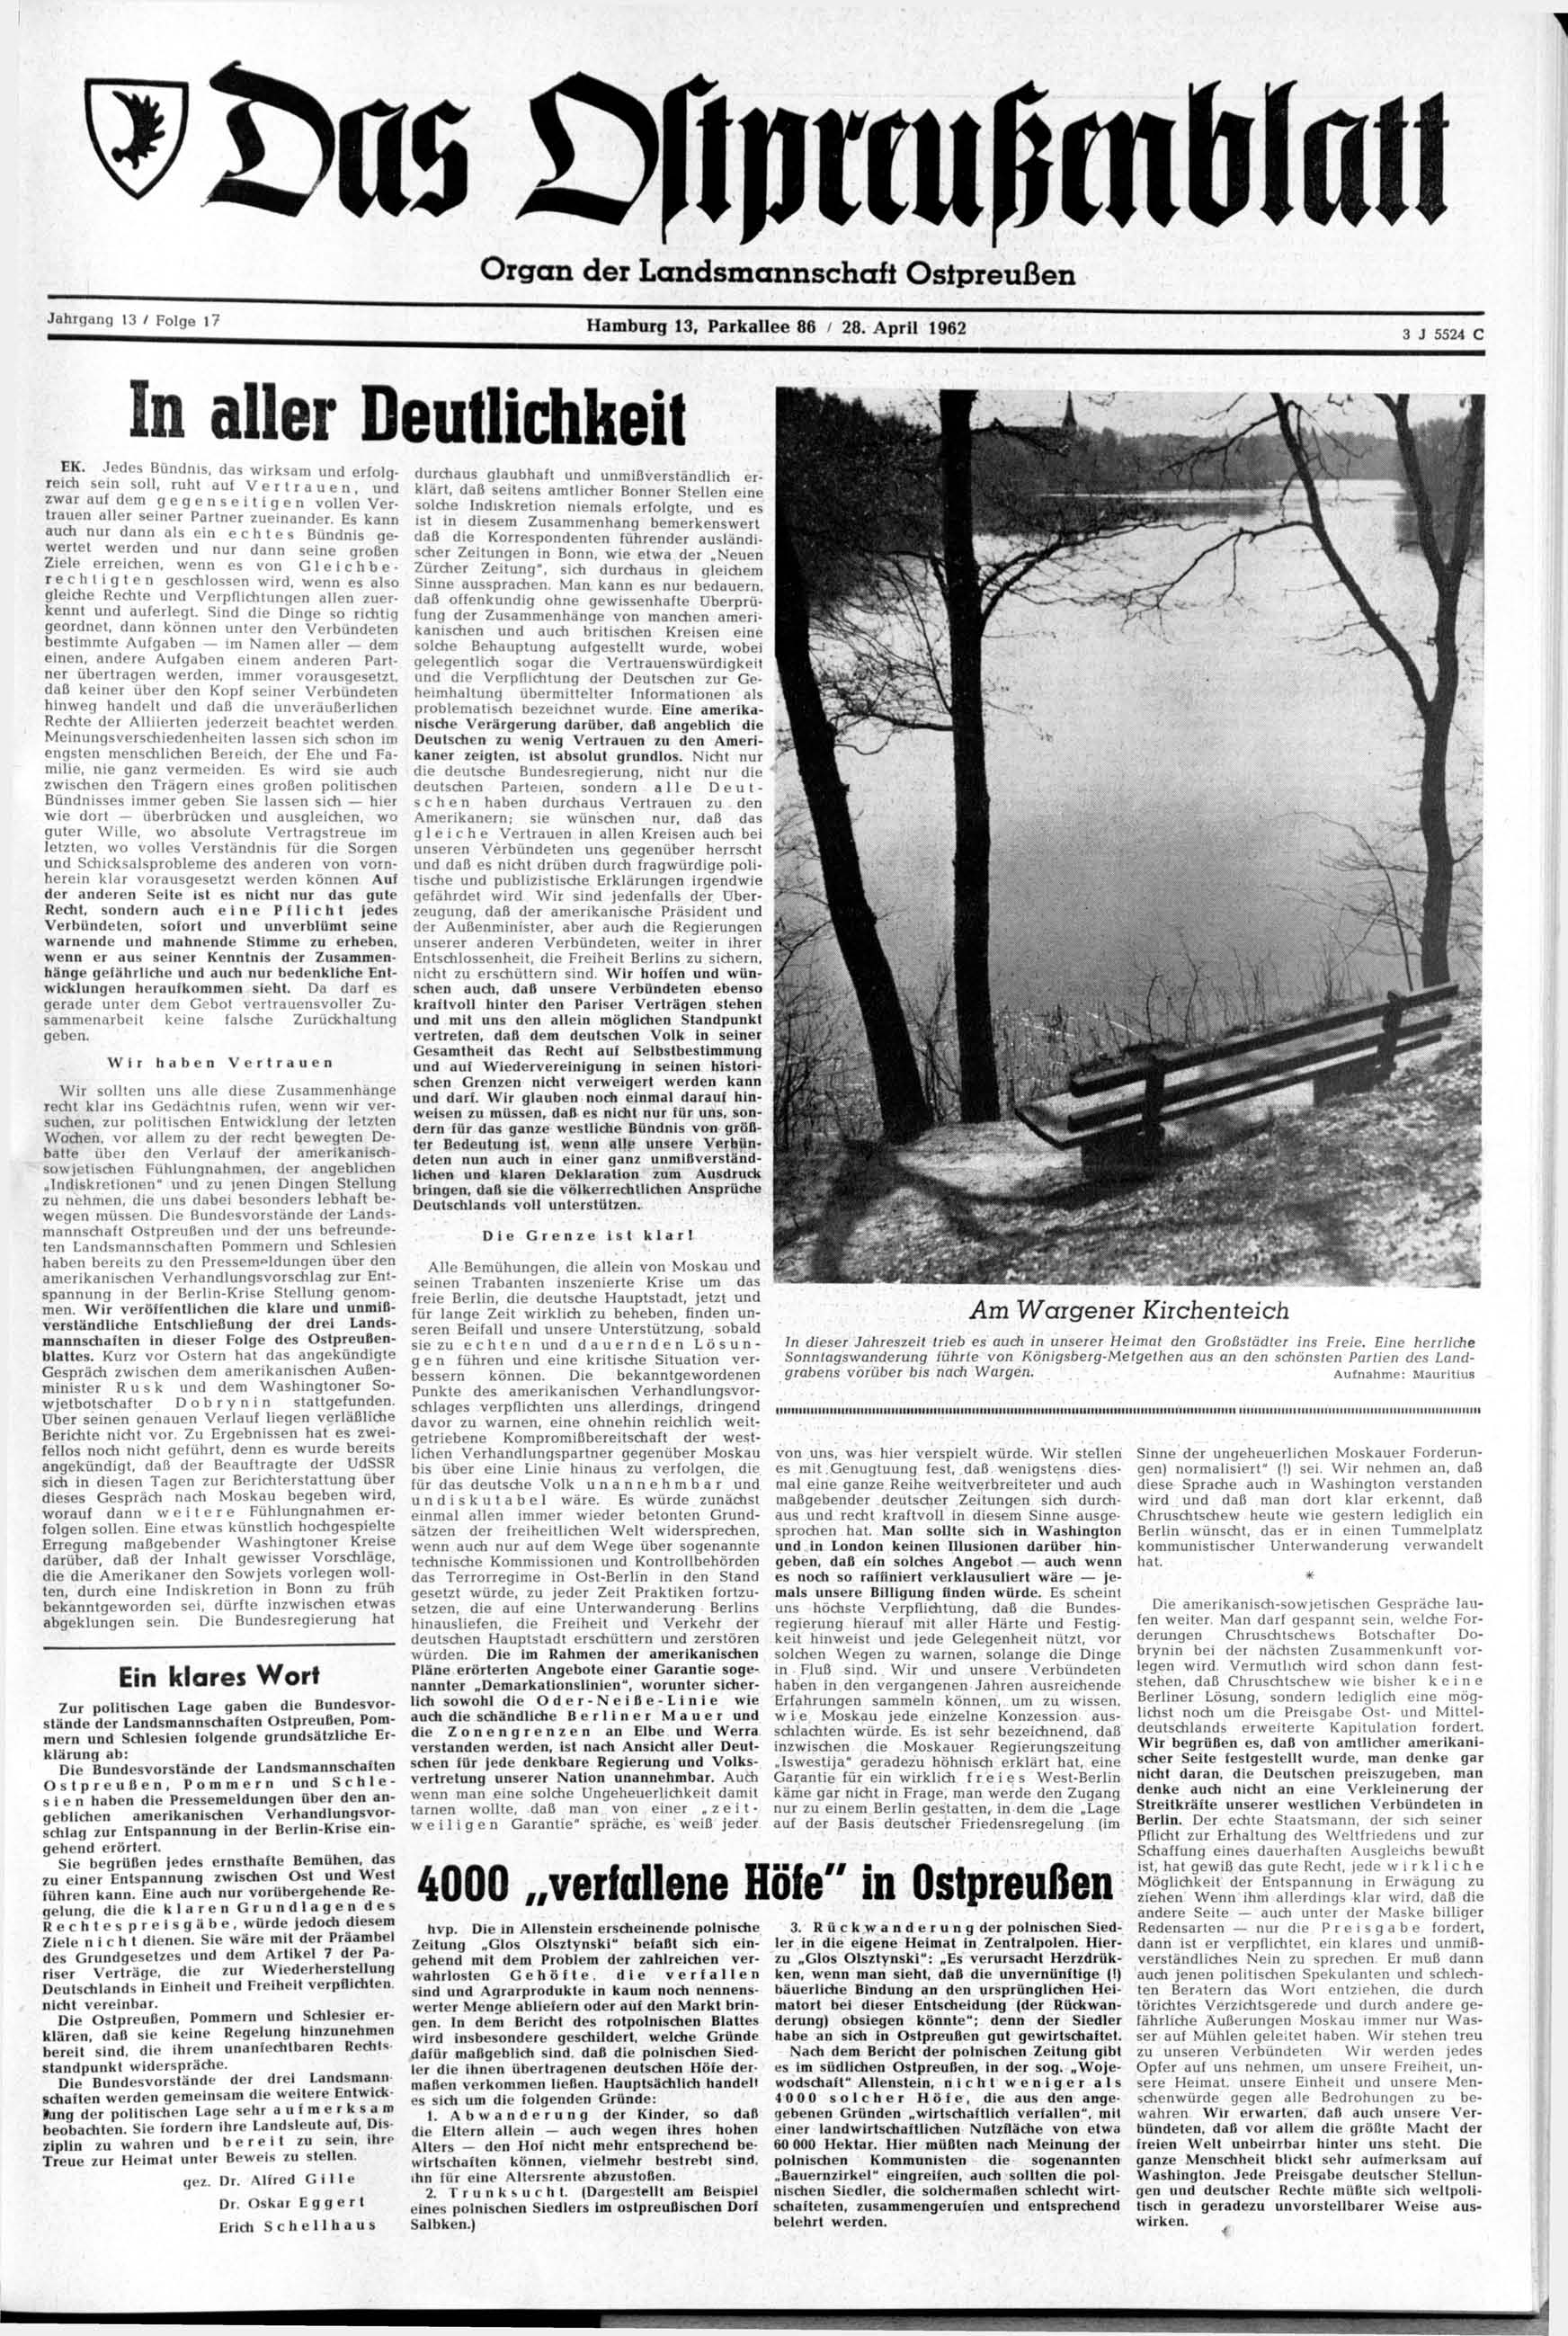 ^Das tfipteußmwan Organ der Landsmannschaft Ostpreußen Hamburg 13, Parkallee 86 I 28. April 1962 In aller Deutlichkeit EK.